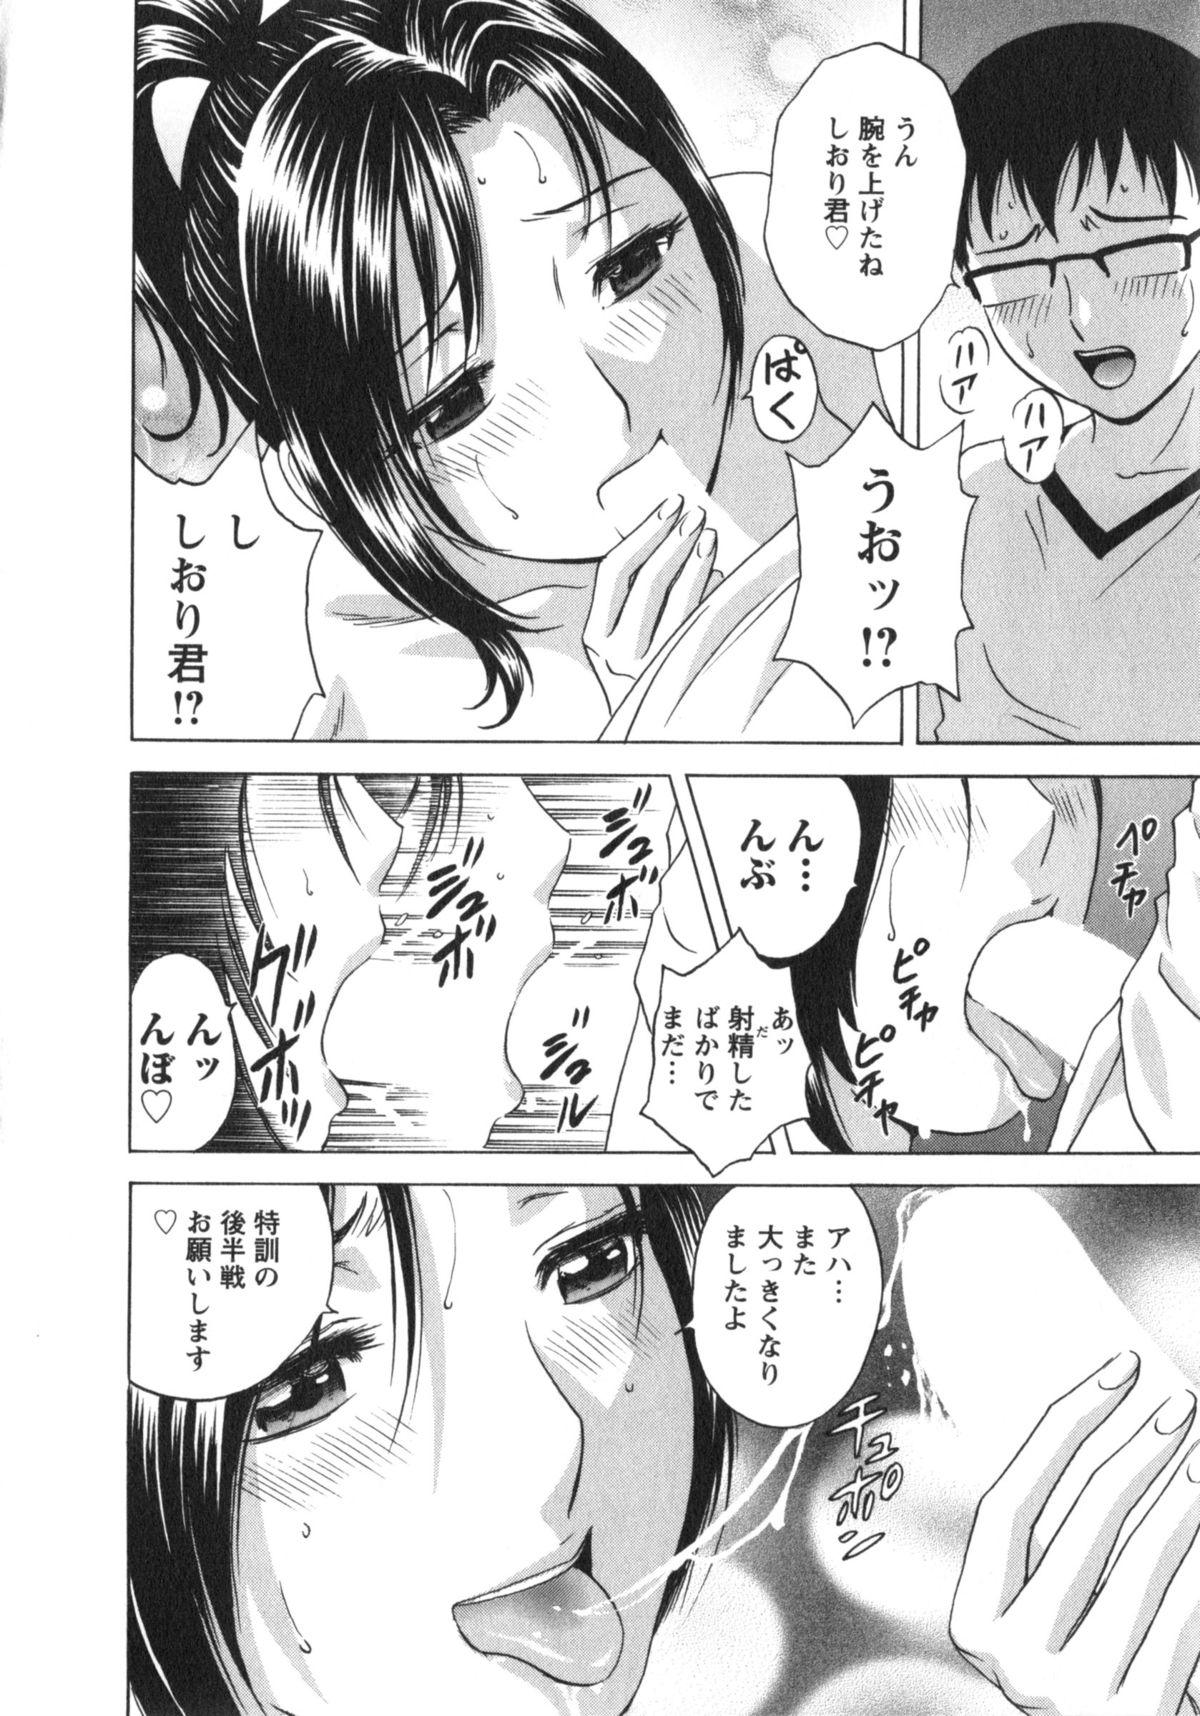 Manga no youna Hitozuma to no Hibi - Days with Married Women such as Comics. 92